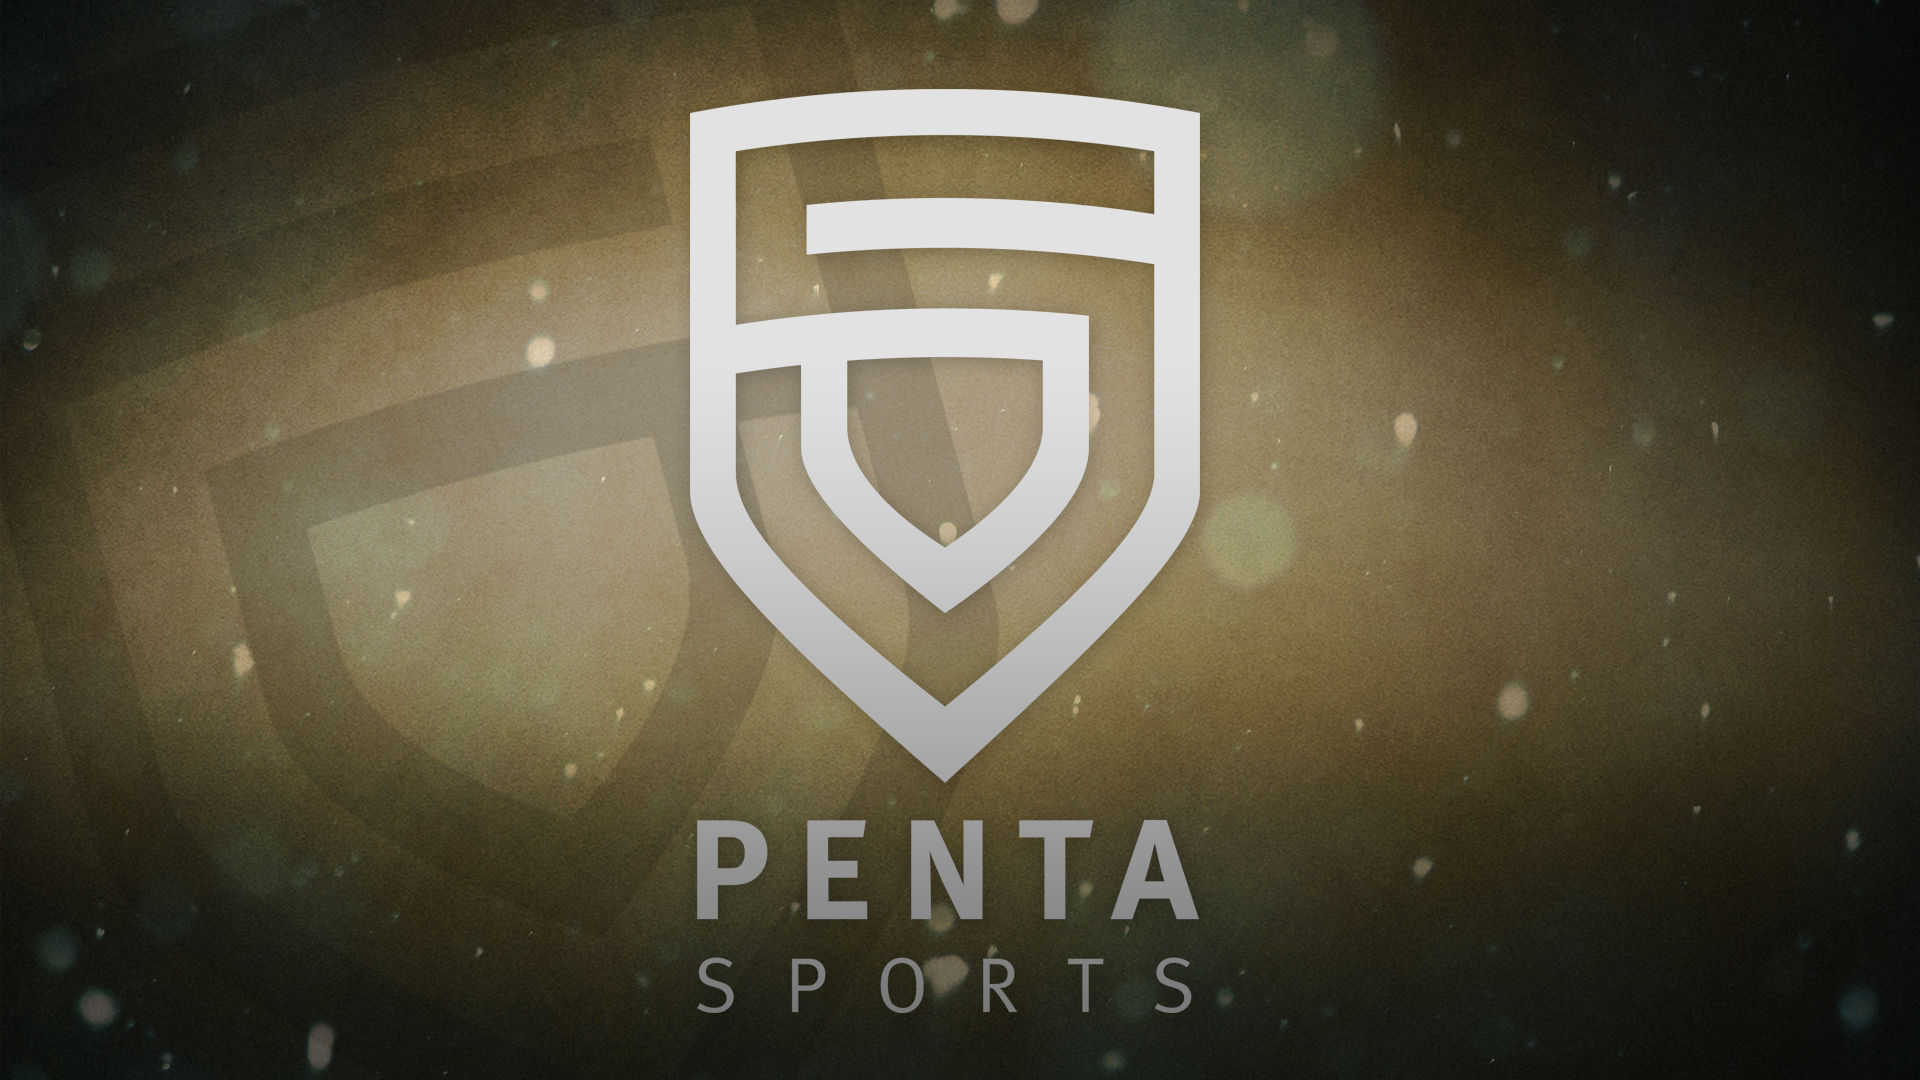 Penta Sports Катовице 2015. Пента. Игра Пента. Лого Пента Спортс. Пент 4